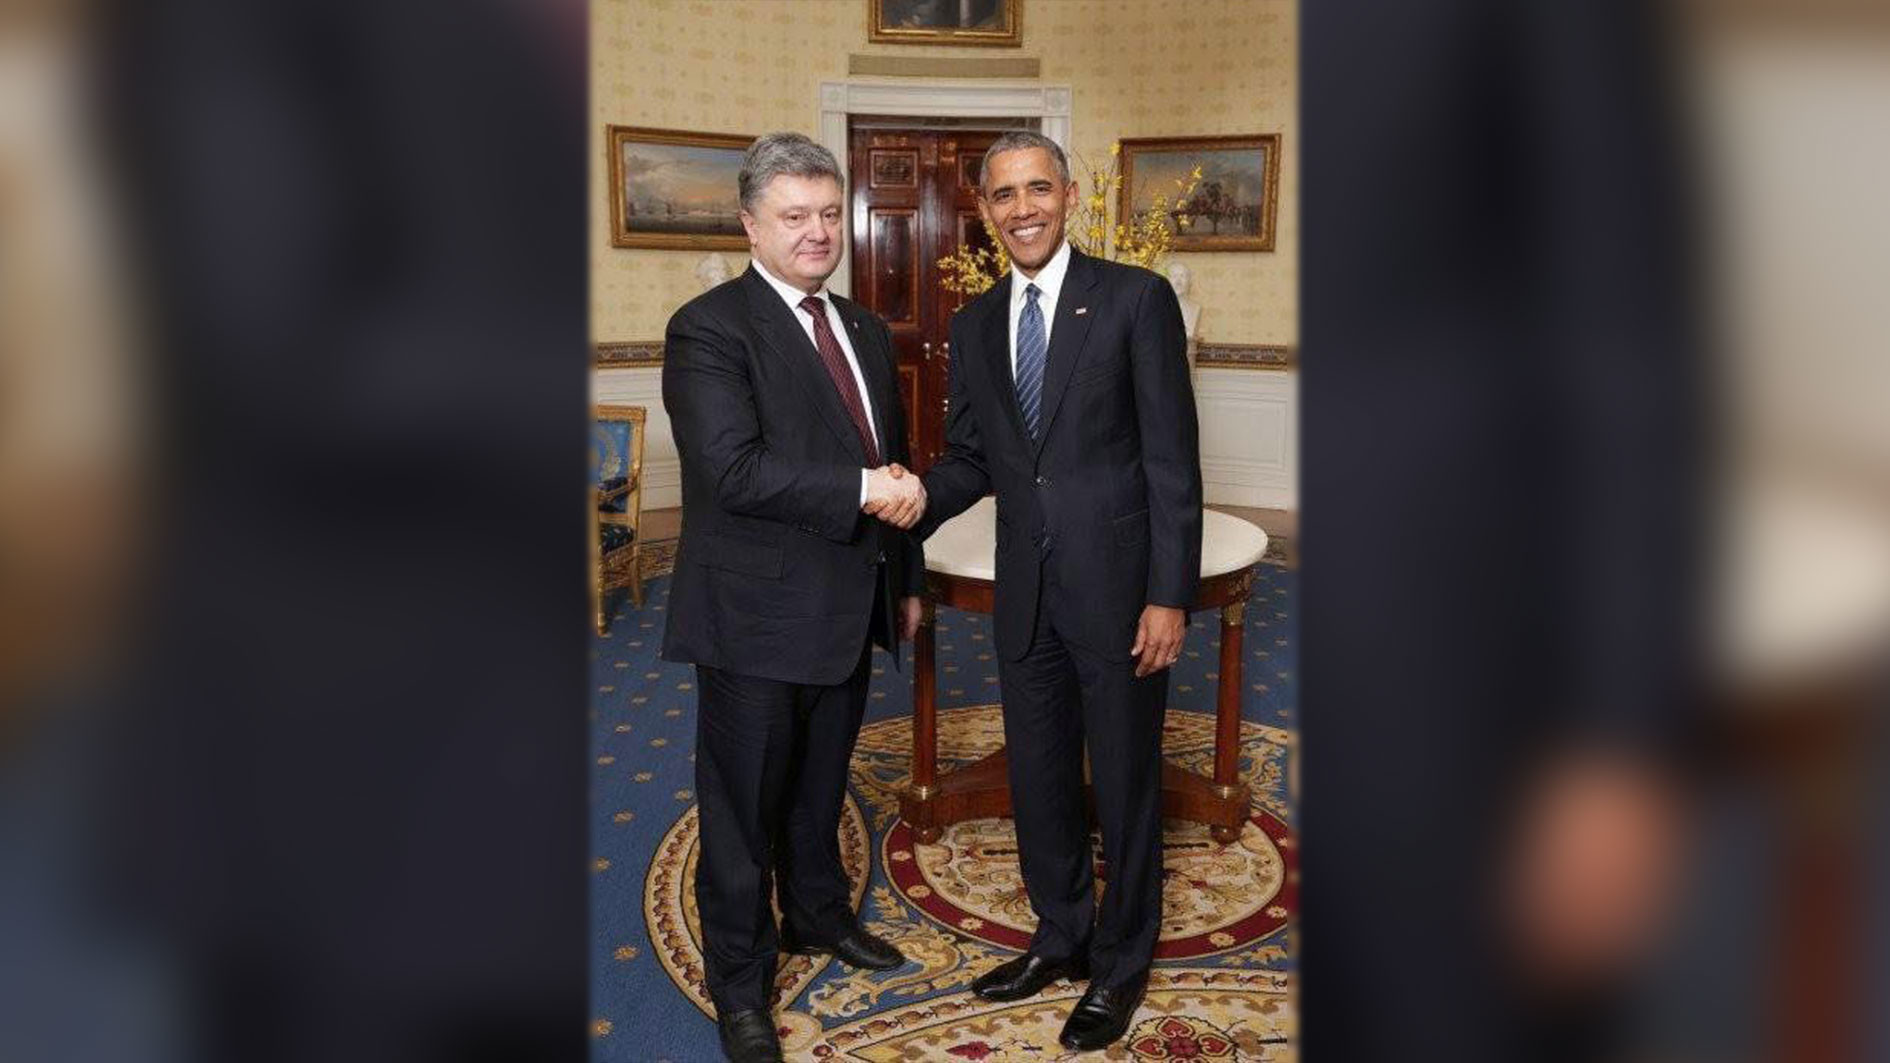 Встреча президента Украины Петра Порошенко и бывшего президента США Барака Обамы в Белом доме, 2014 года. Фото: соцсети